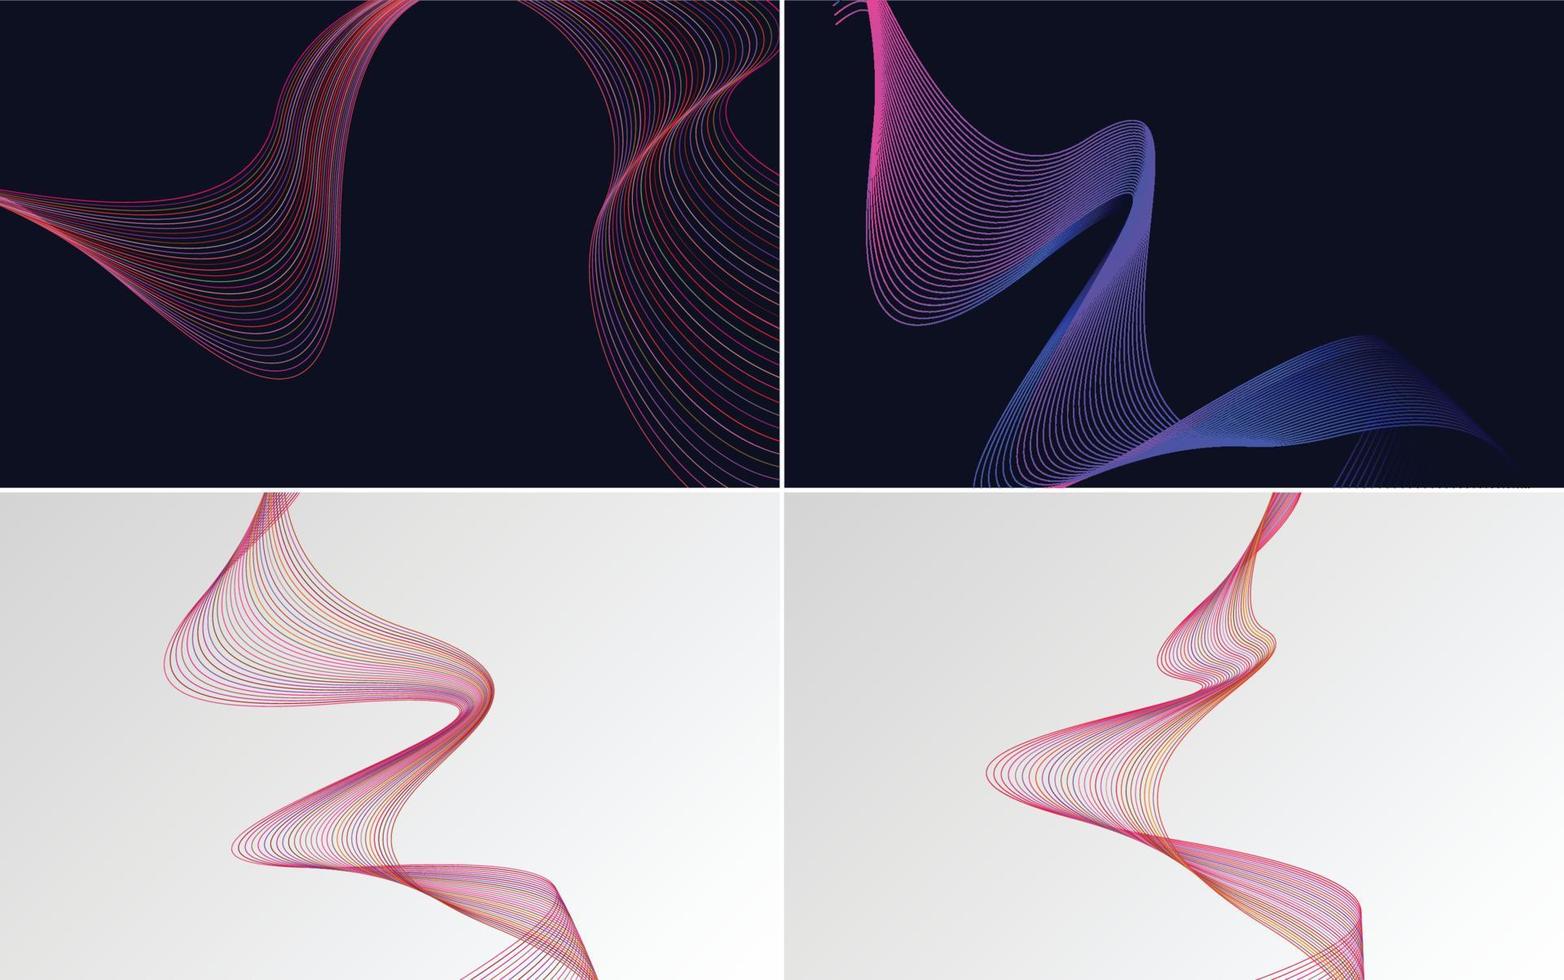 fundos vetoriais abstratos de curva de onda moderna para uma aparência elegante e moderna vetor